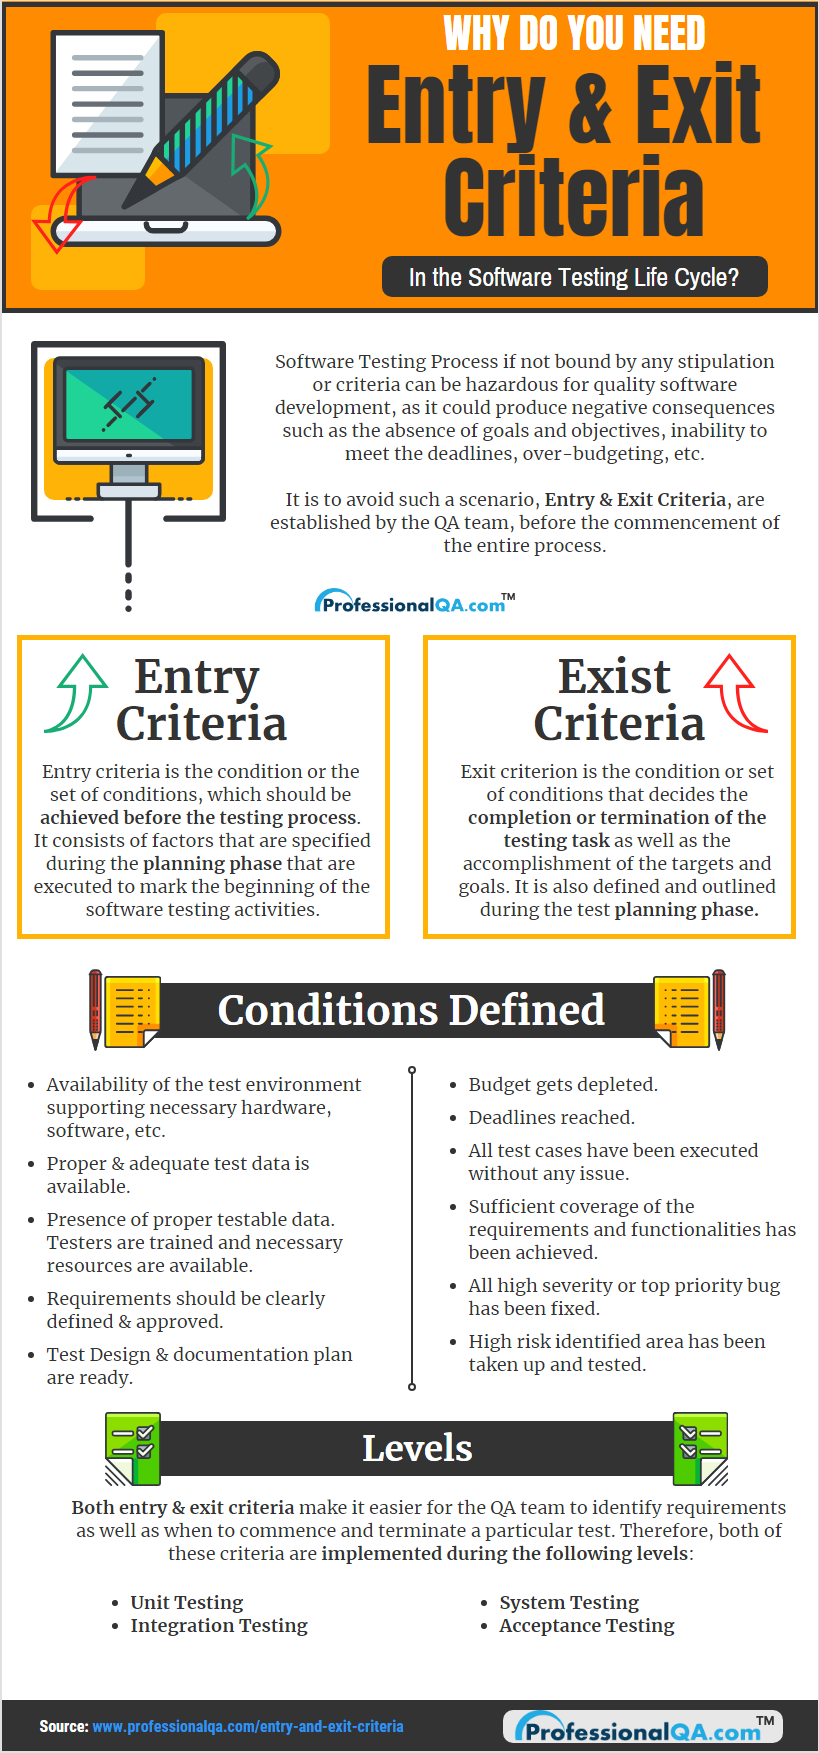 Entry & Exit Criteria